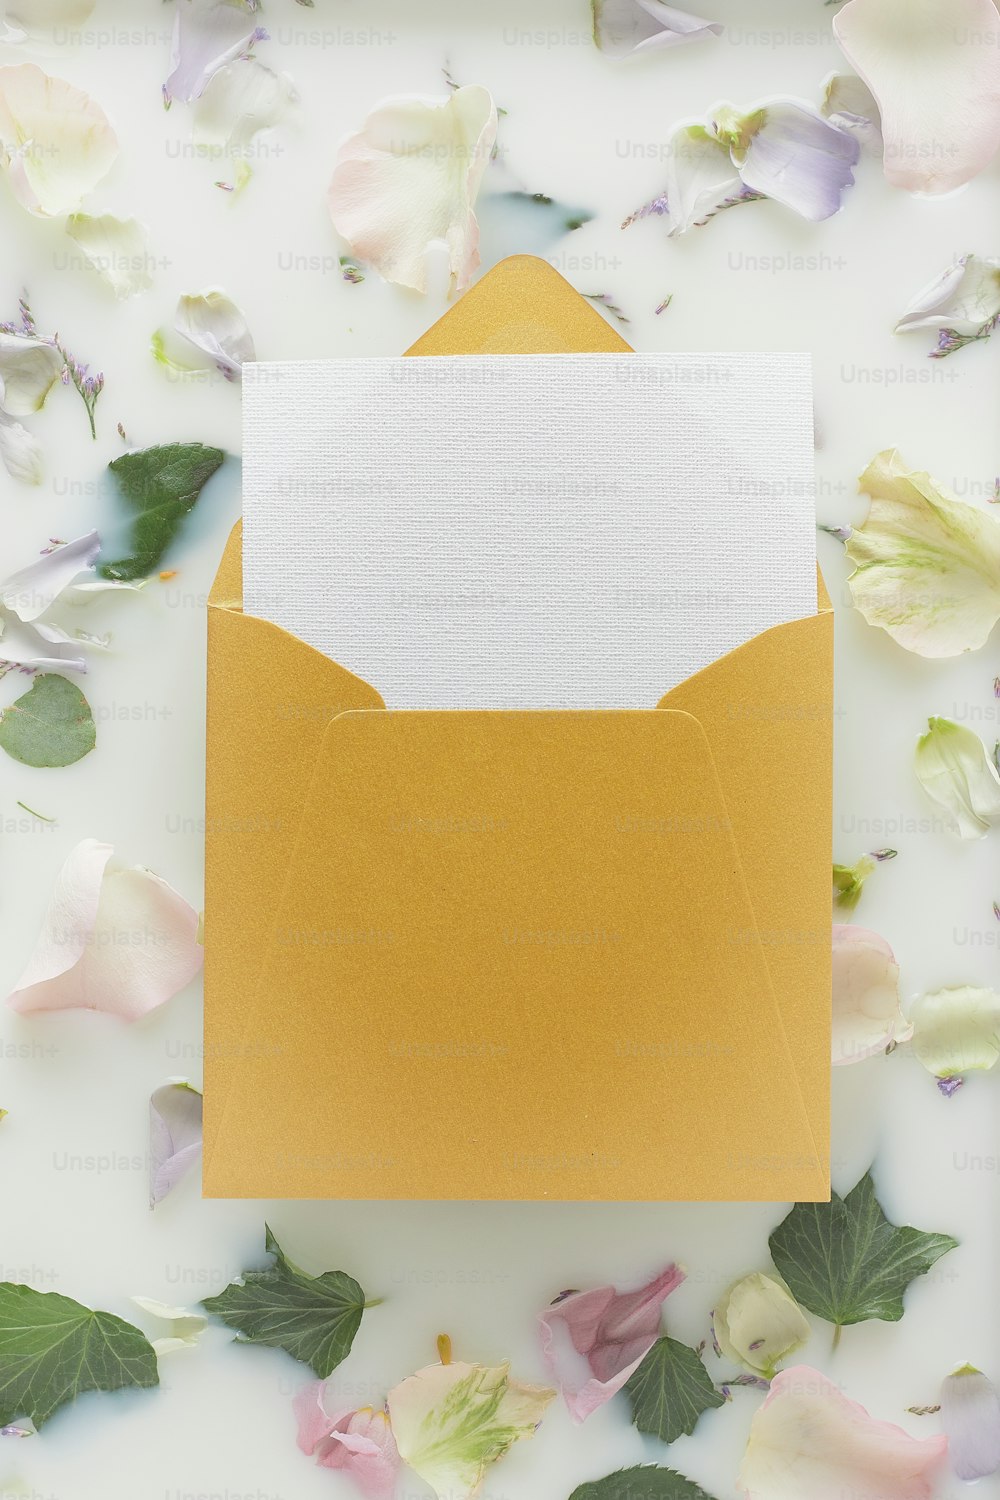 une enveloppe jaune avec une carte blanche à l’intérieur entourée de fleurs